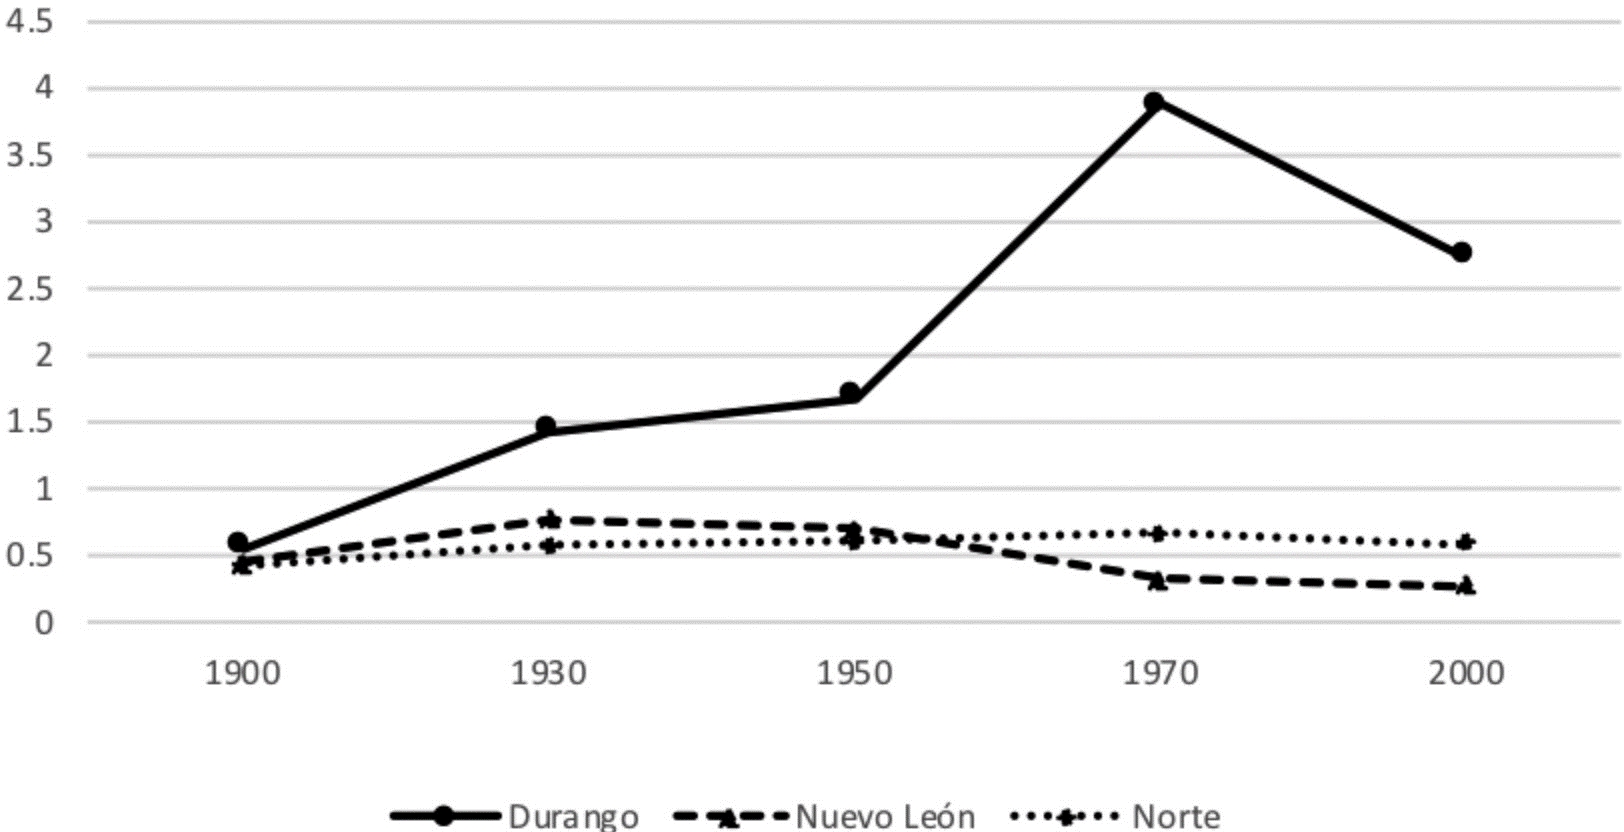 Saldo de la migración
interna en el Norte 1900-2000 

(número de emigrantes entre número de
inmigrantes)